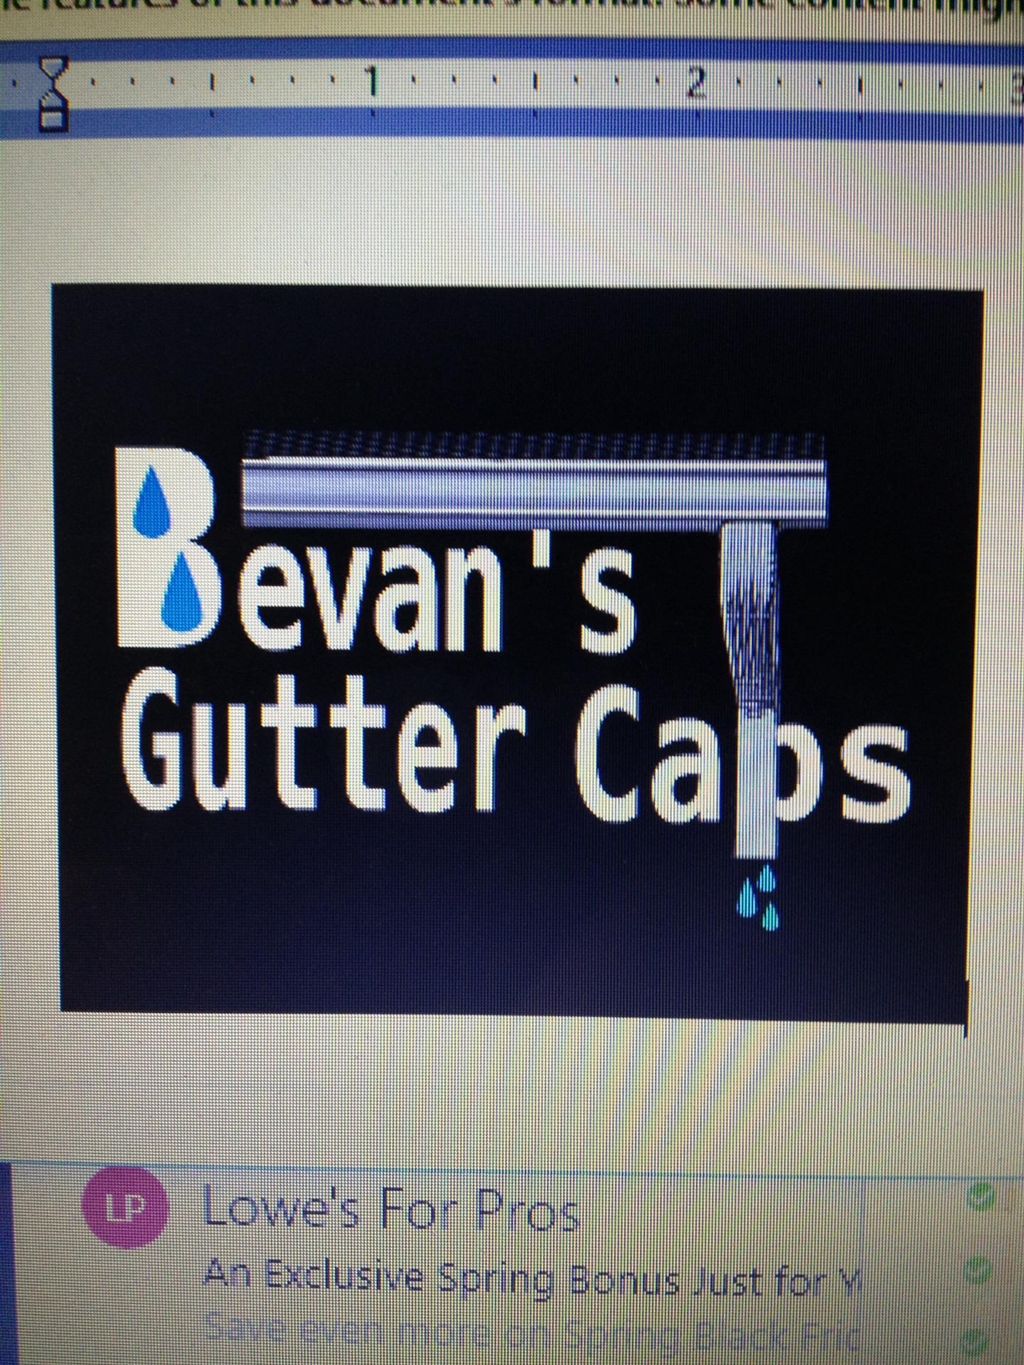 Bevan's Gutter Caps